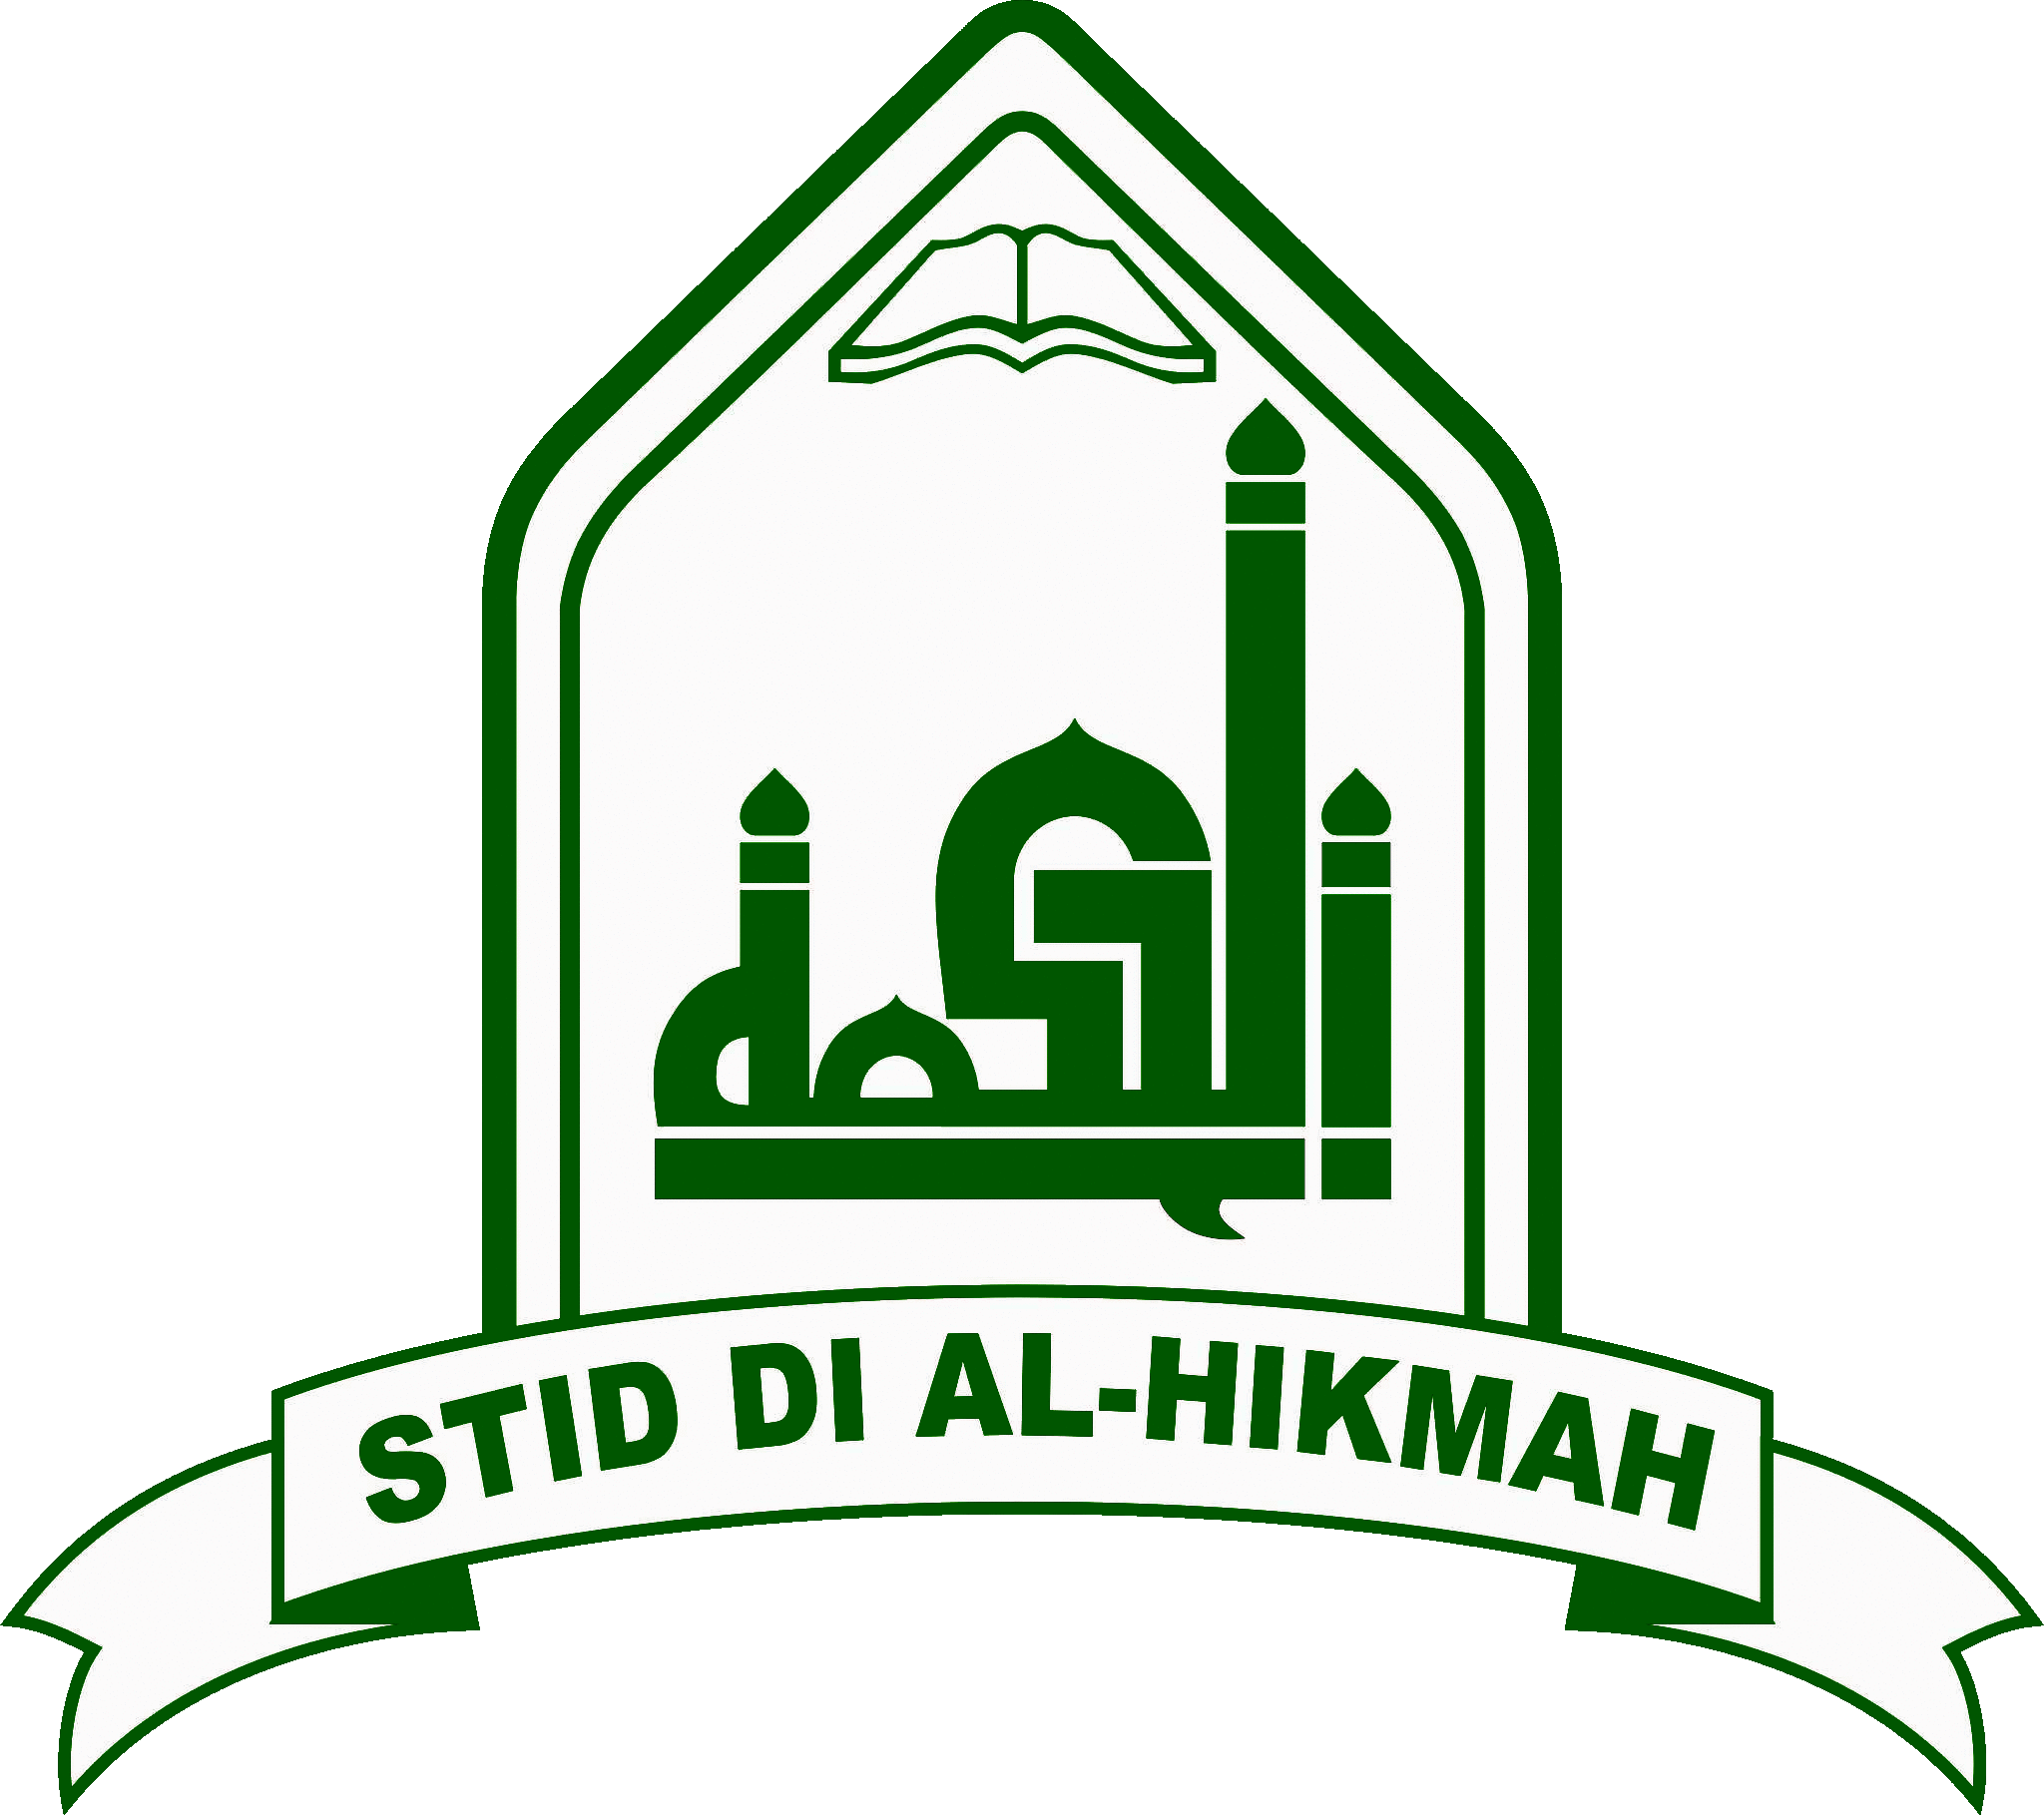 STID DI AL-HIKMAH JAKARTA